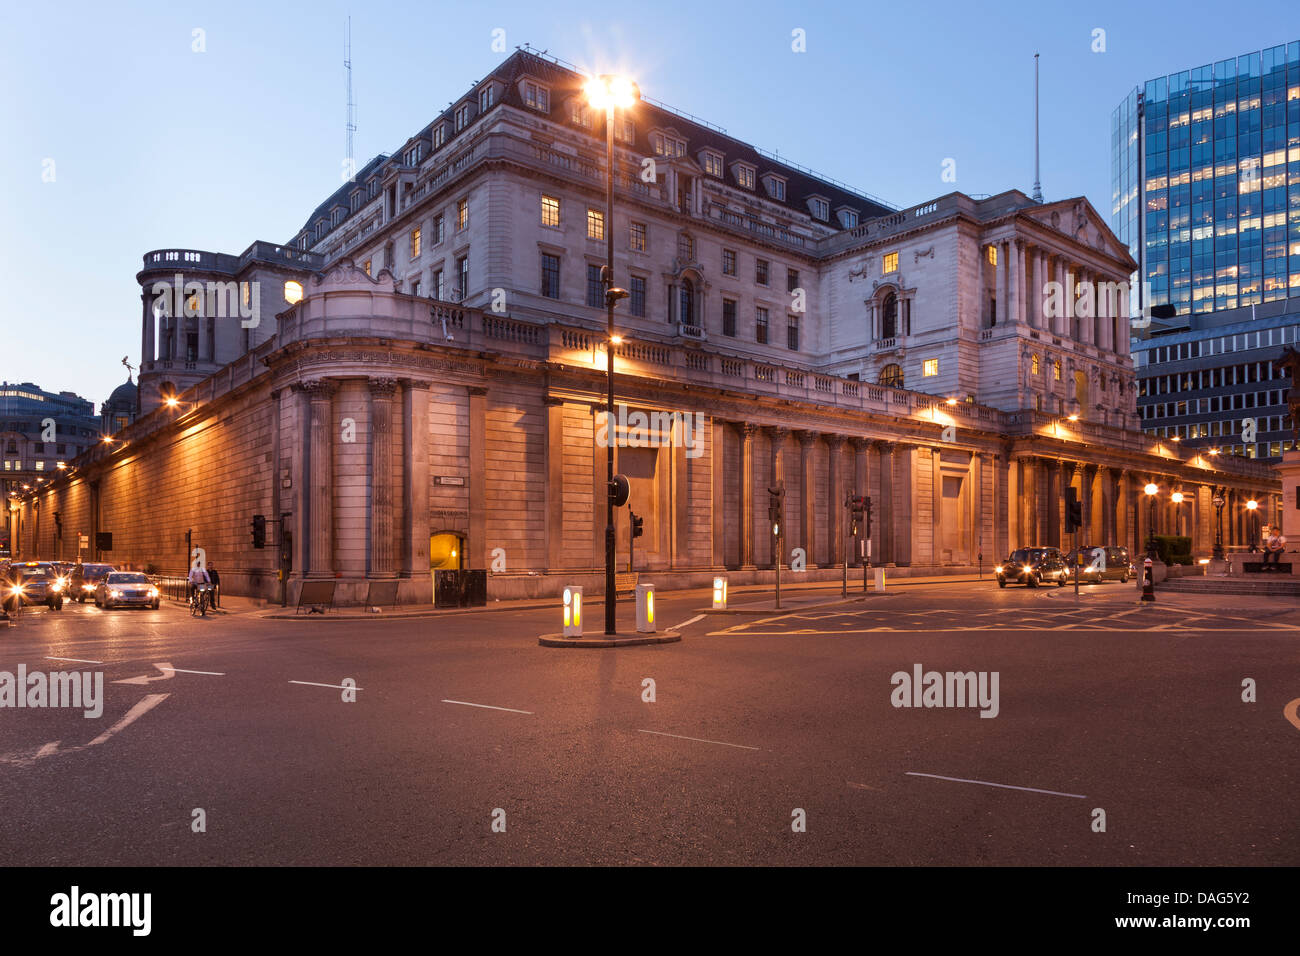 La Banque d'Angleterre Building at night,Banque,vue à partir de la jonction de la ville de Londres, Angleterre Banque D'Images